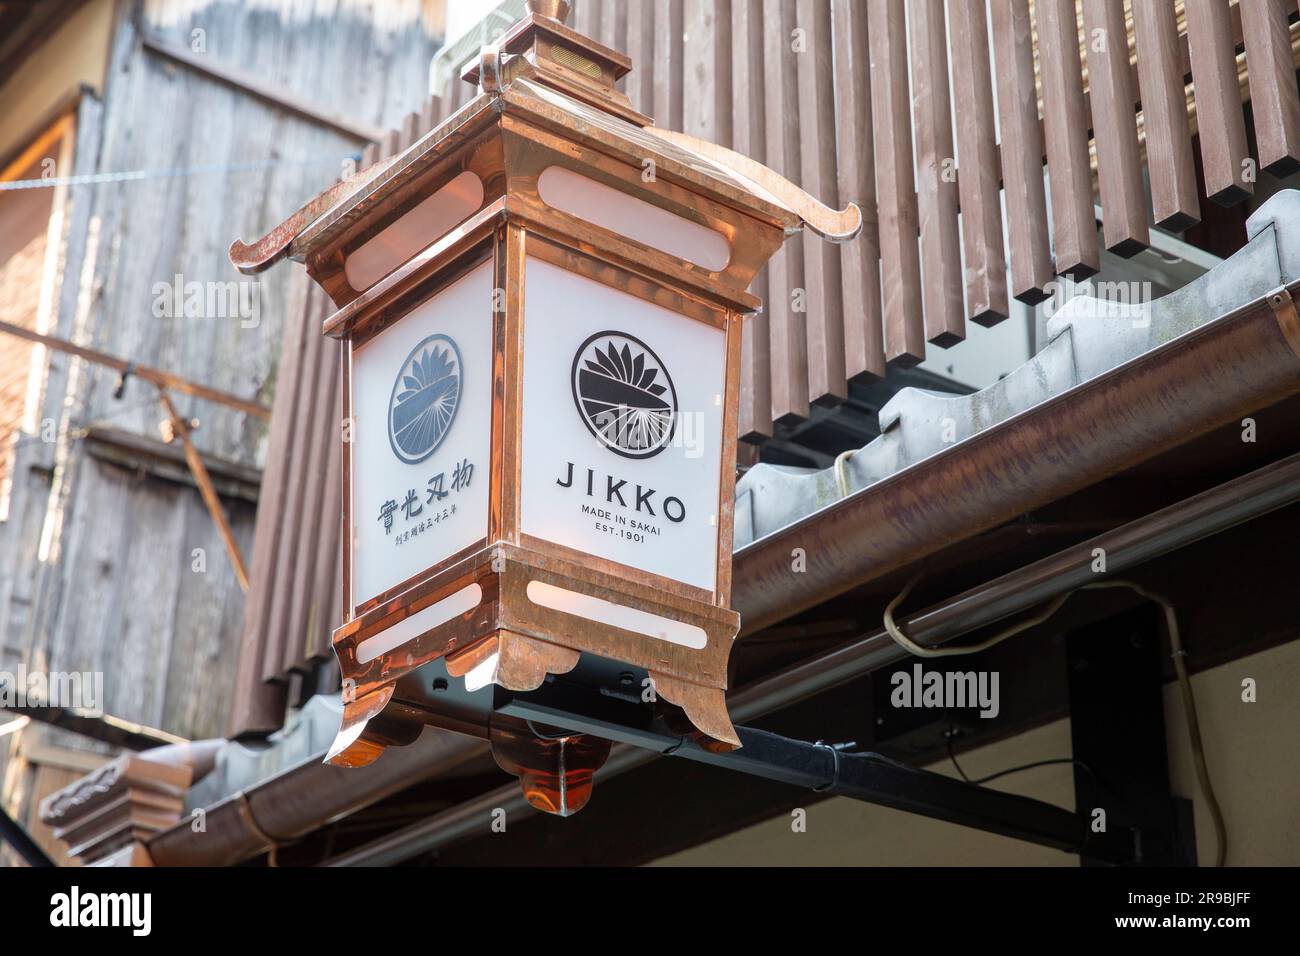 Magasin de couteaux de Jikko à Pontocho ruelle, au centre de Kyoto, 2023, vendant des couteaux de cuisine et des couteaux de chef fabriqués à sakai, Japon, Asie, 2023 Banque D'Images